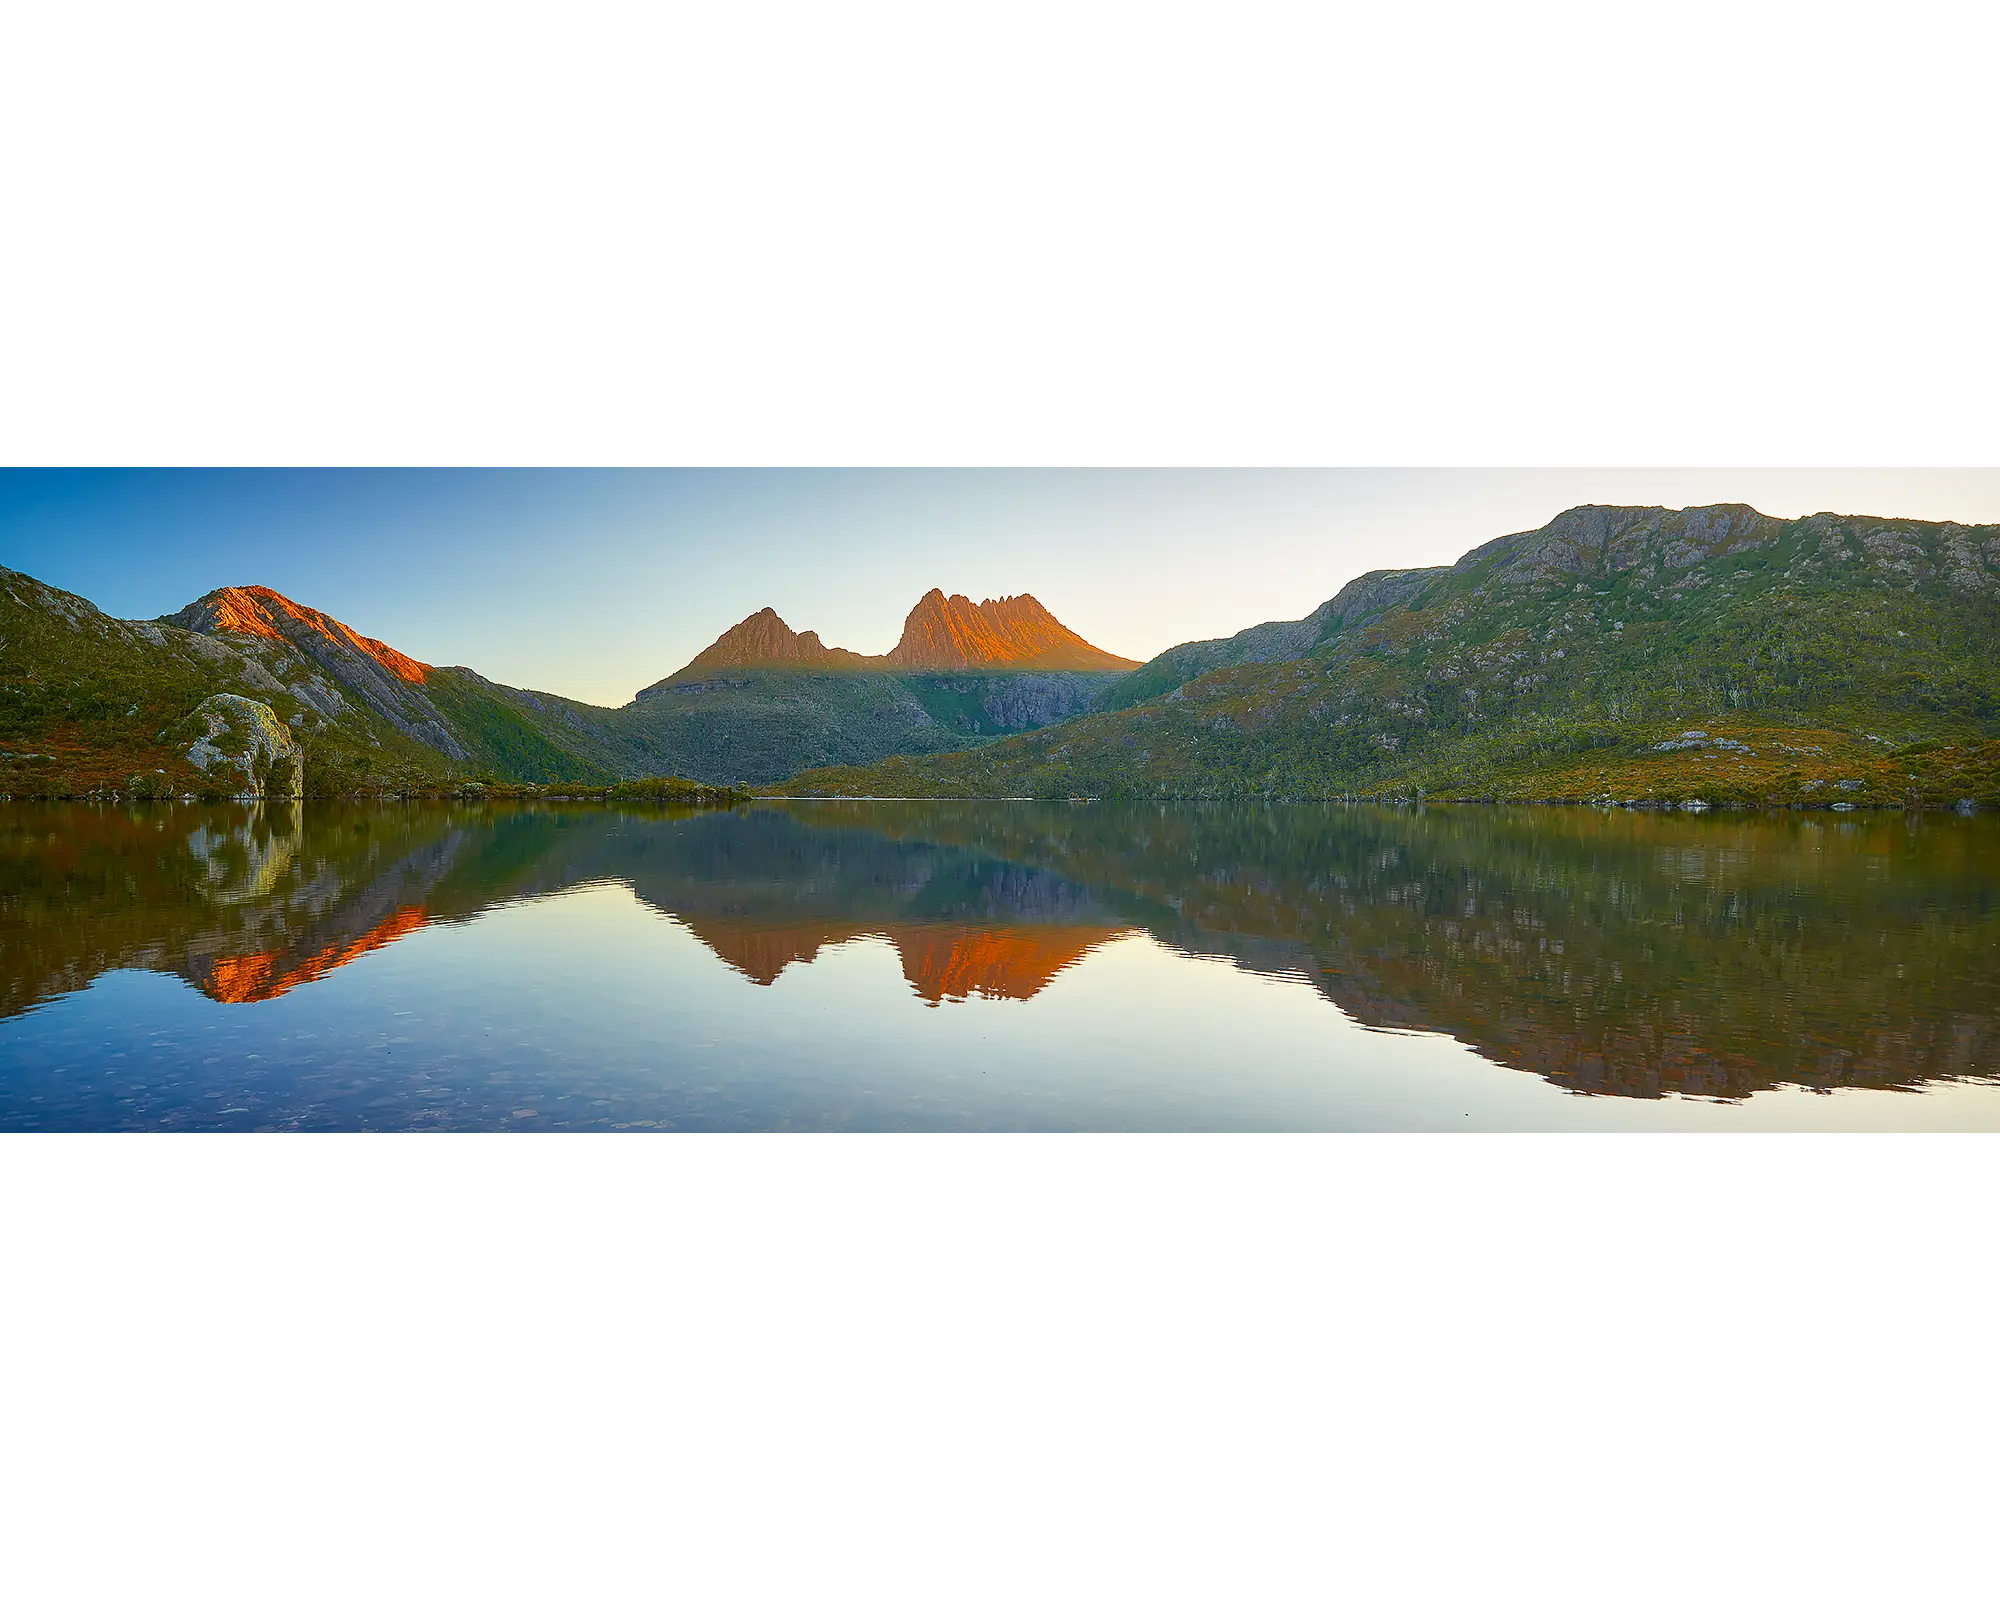 Illumination. Sunset reflection of Cradle Mountain in Dove Lake, Tasmania, Australia.